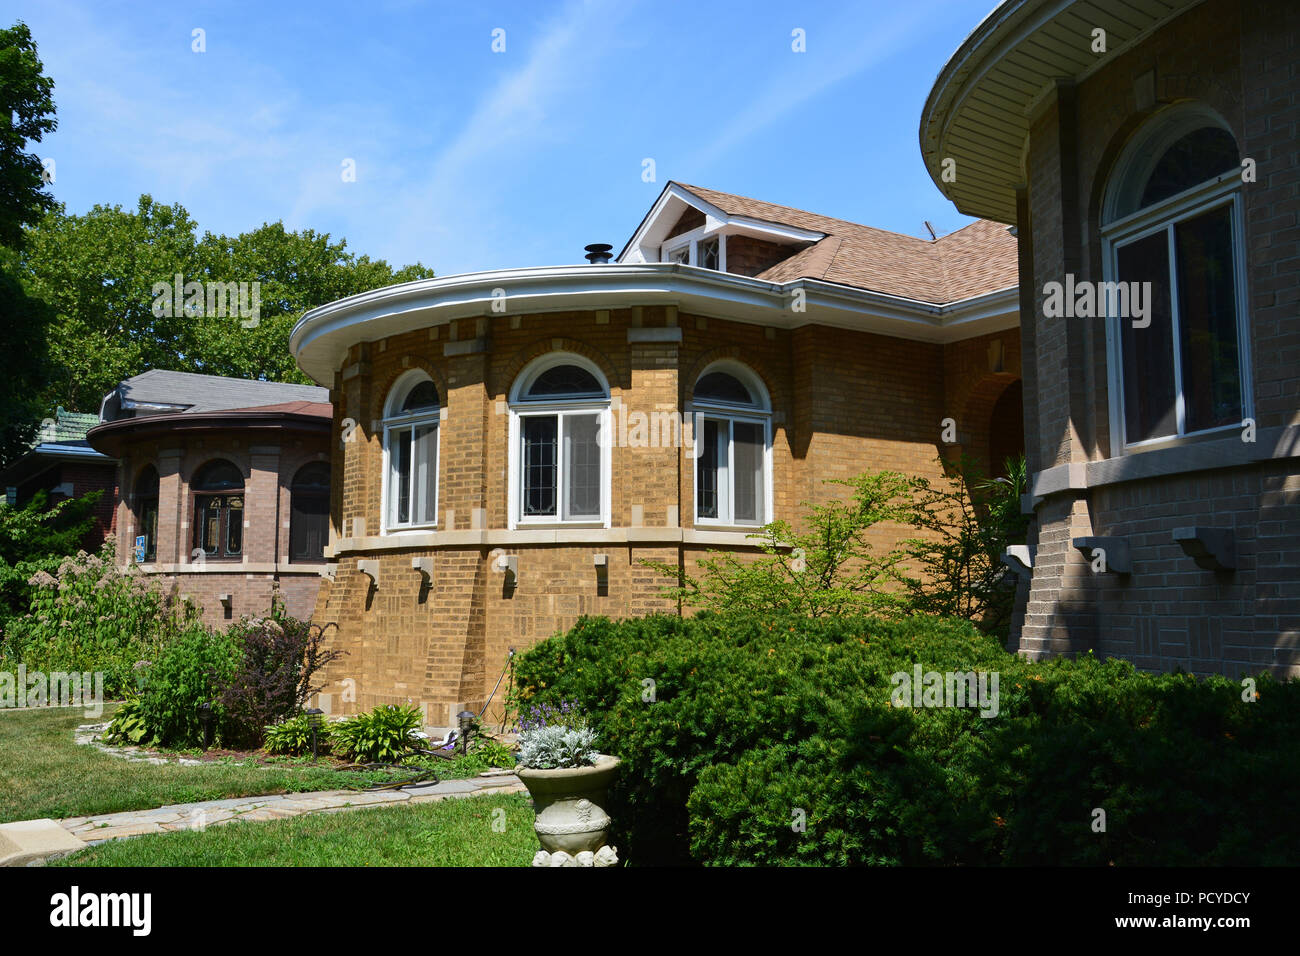 La Rogers Park Manor Historic District dispose d'un cluster dense de contreparties de bungalows de style Chicago construit dans les années 1920 APRÈS LA PREMIÈRE GUERRE MONDIALE. Banque D'Images